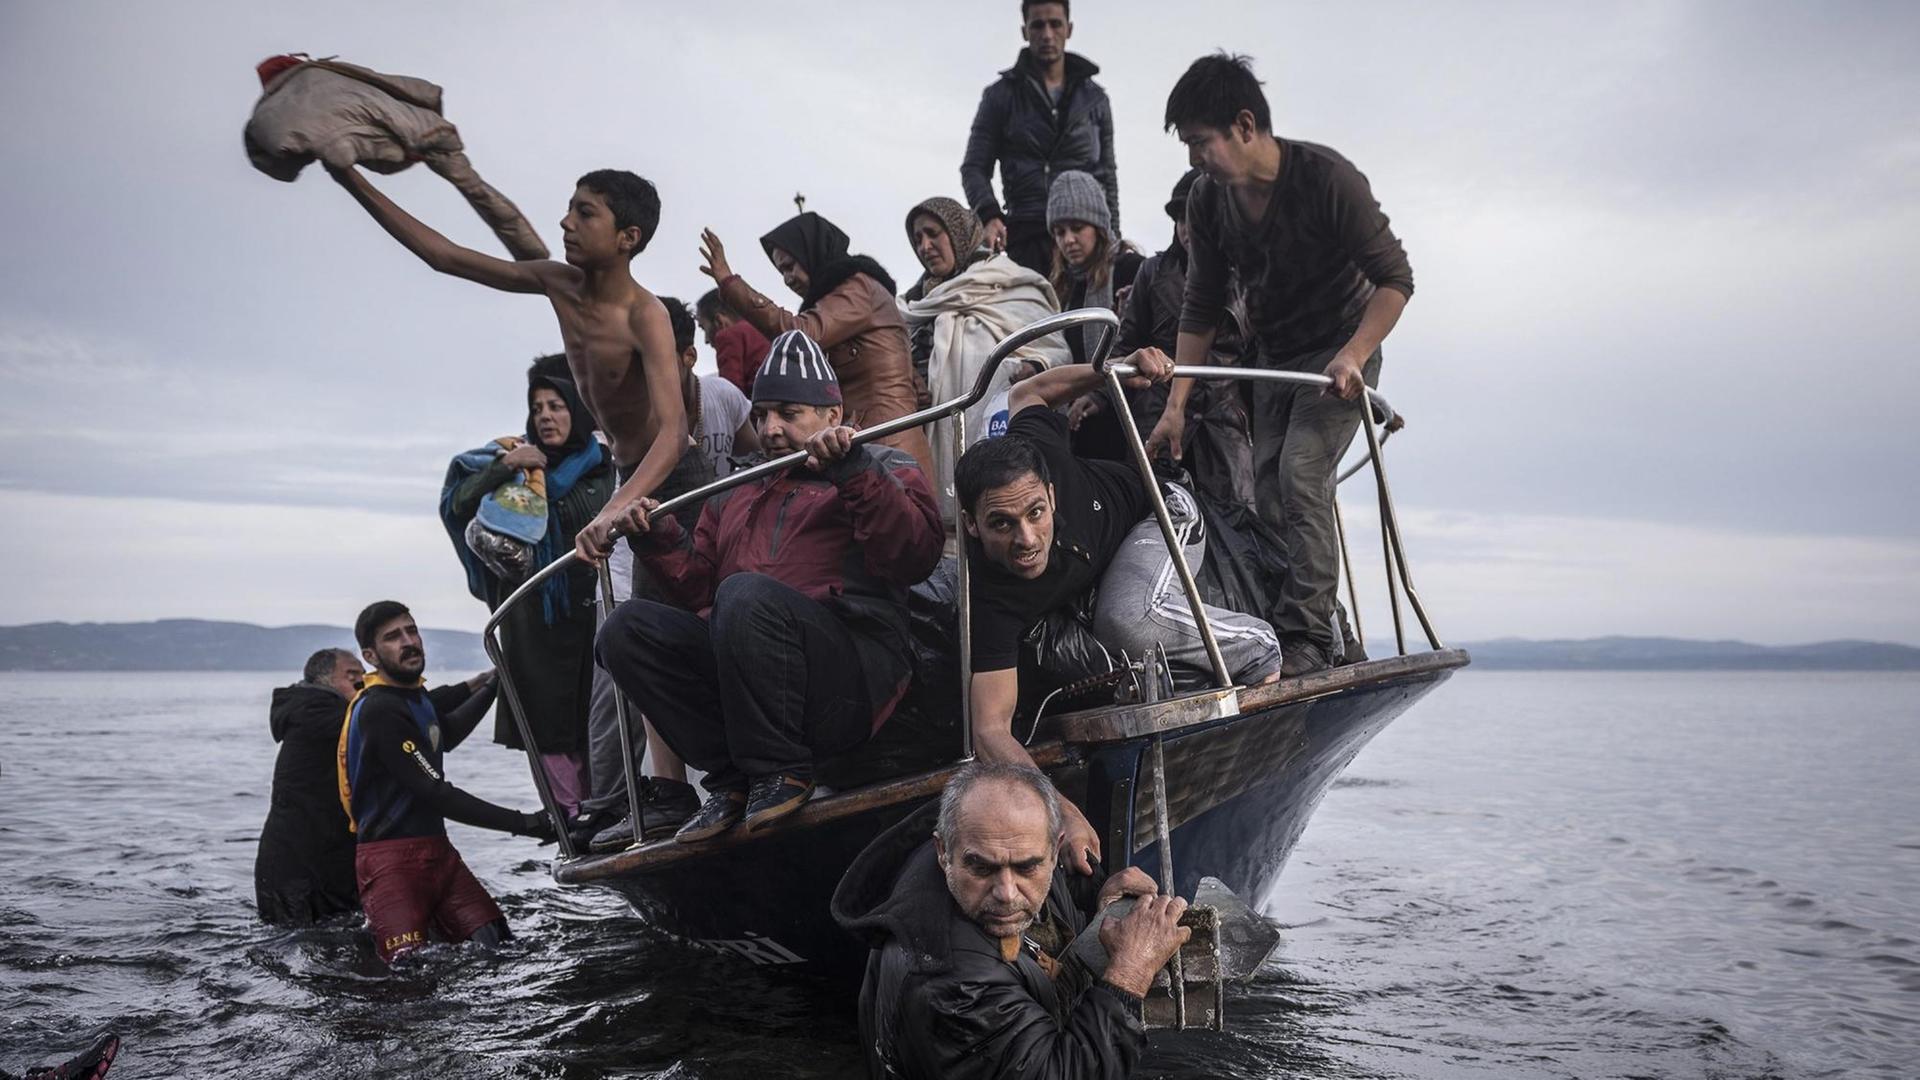 In der Kategorie "General News" gewann der russische Fotograf Sergey Ponomarev den World Press Photo Award für ein Bild eines Flüchtlingsbootes vor den griechischen Inseln.